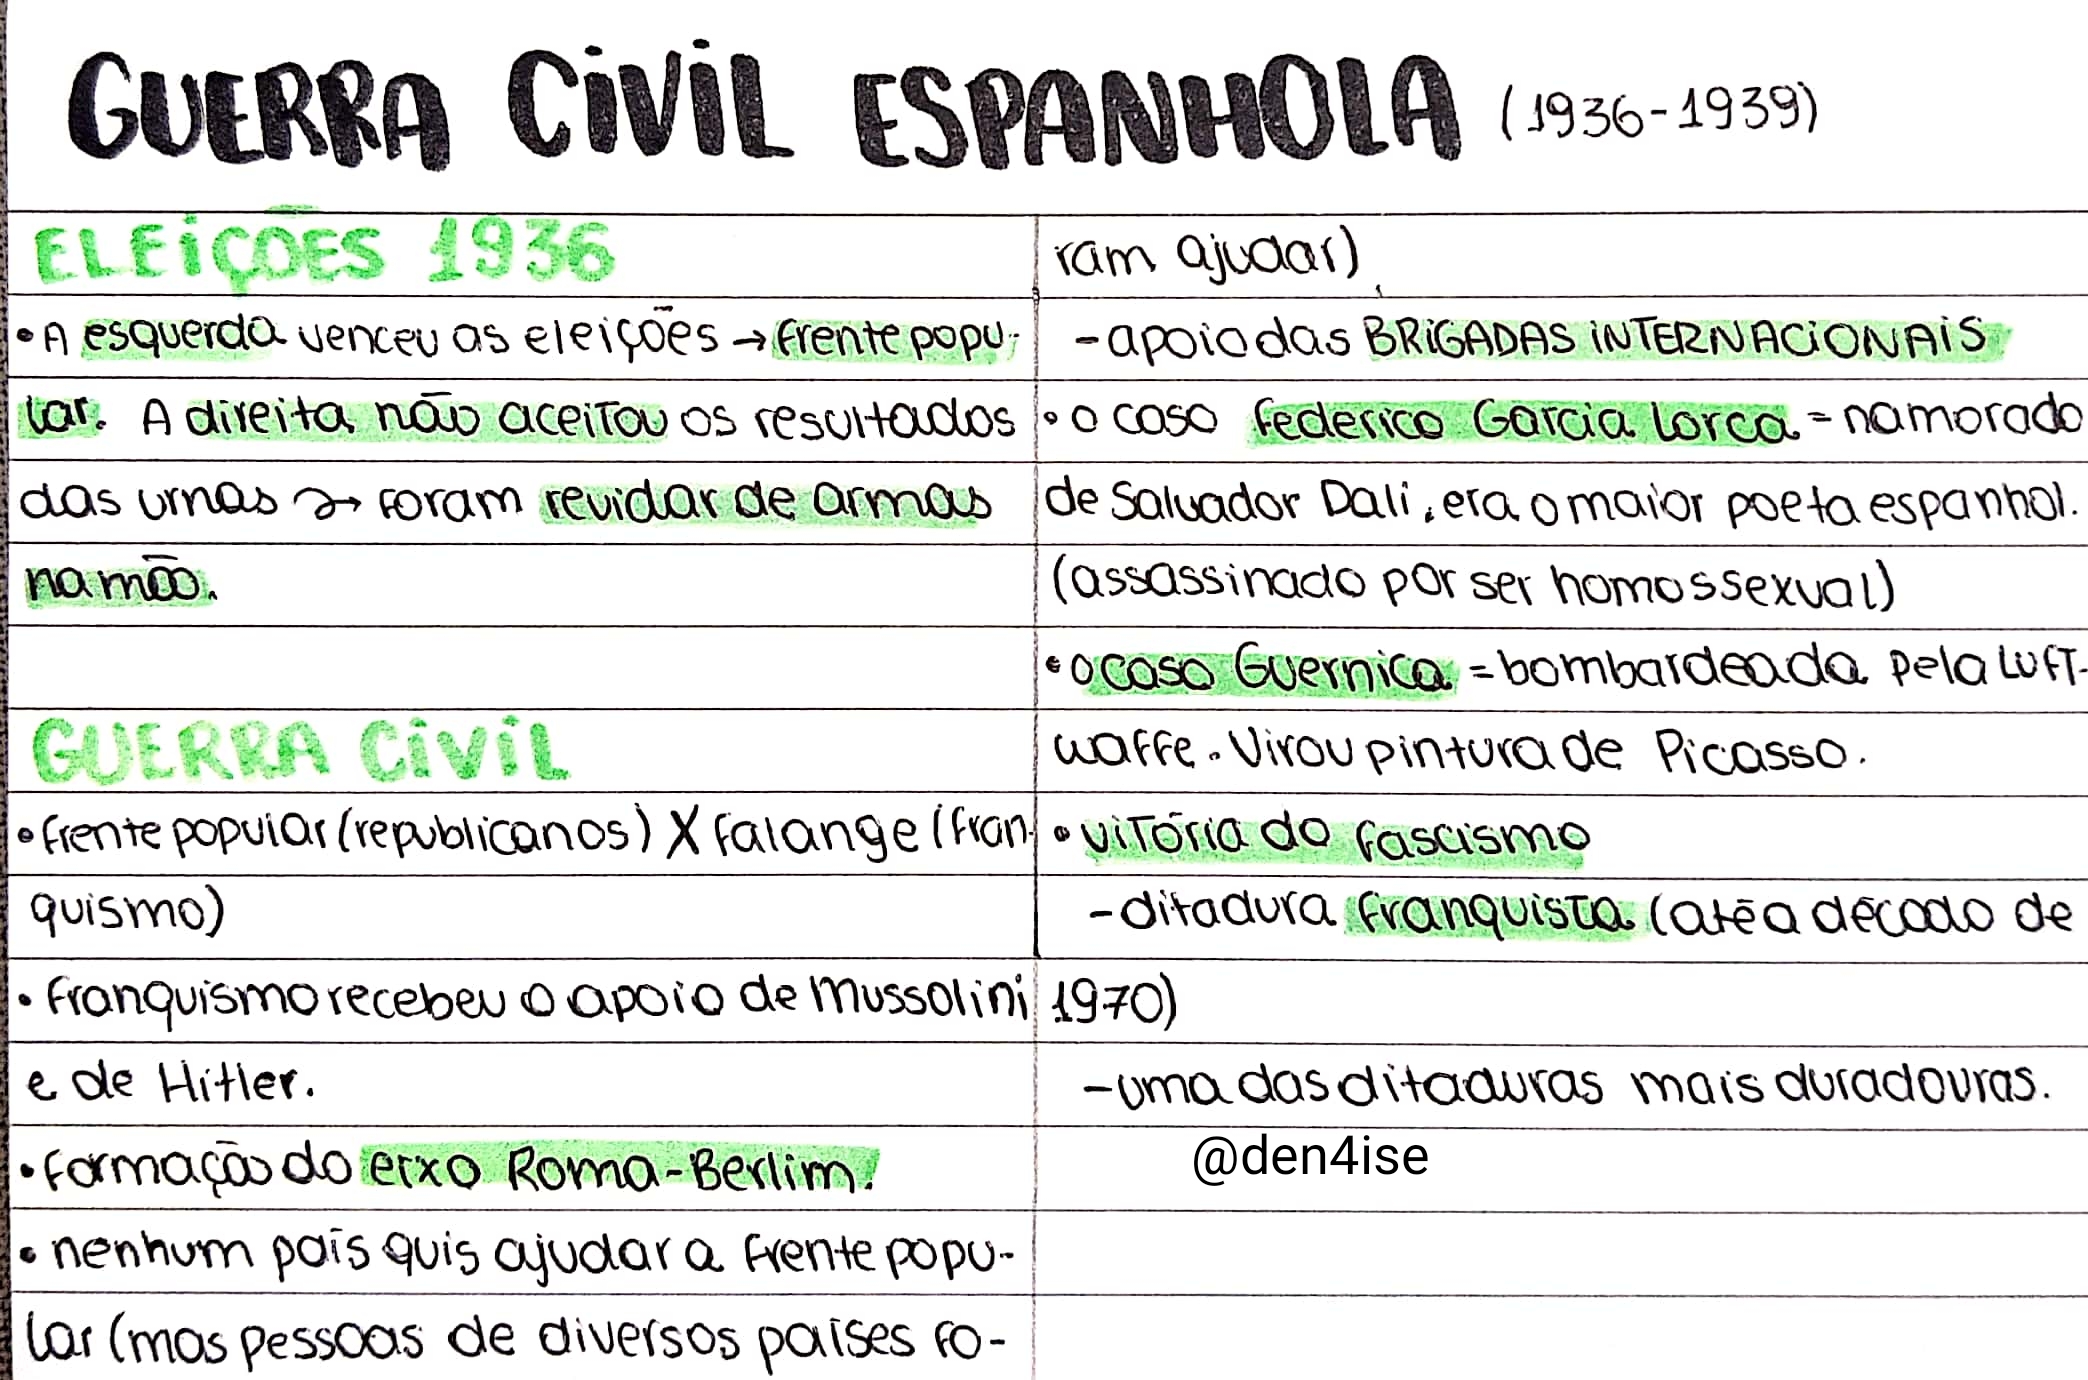 Guerra civil espanhola - História